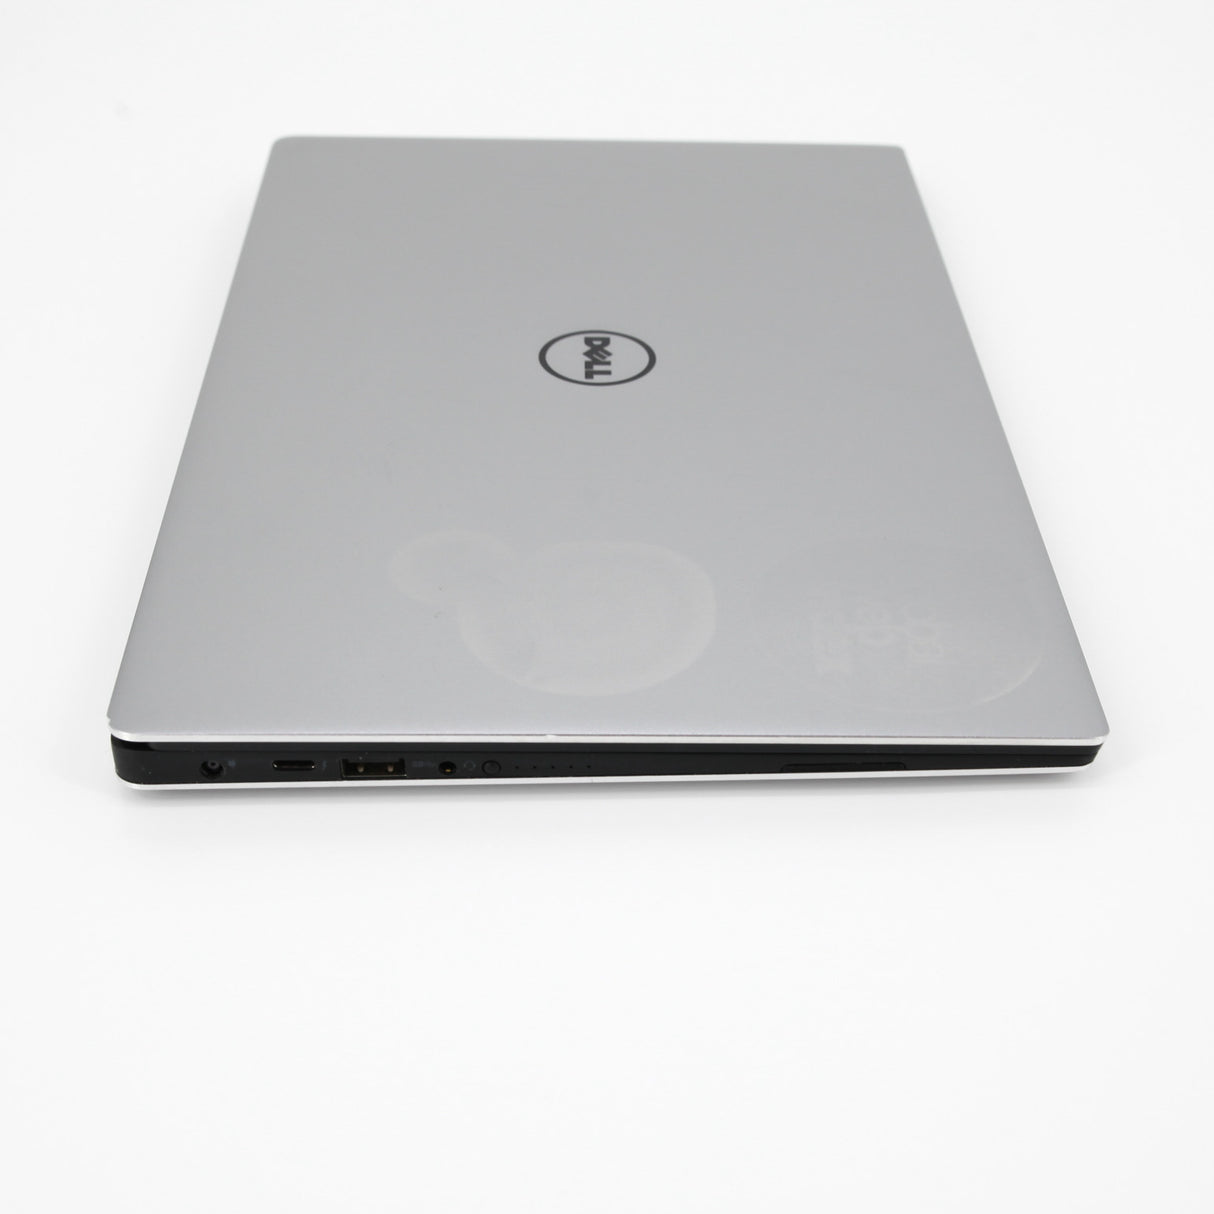 Dell XPS 13 9360 Touch Laptop: Core i5 7th Gen, 256GB SSD, 8GB RAM, Warranty VAT - GreenGreenStoreUK